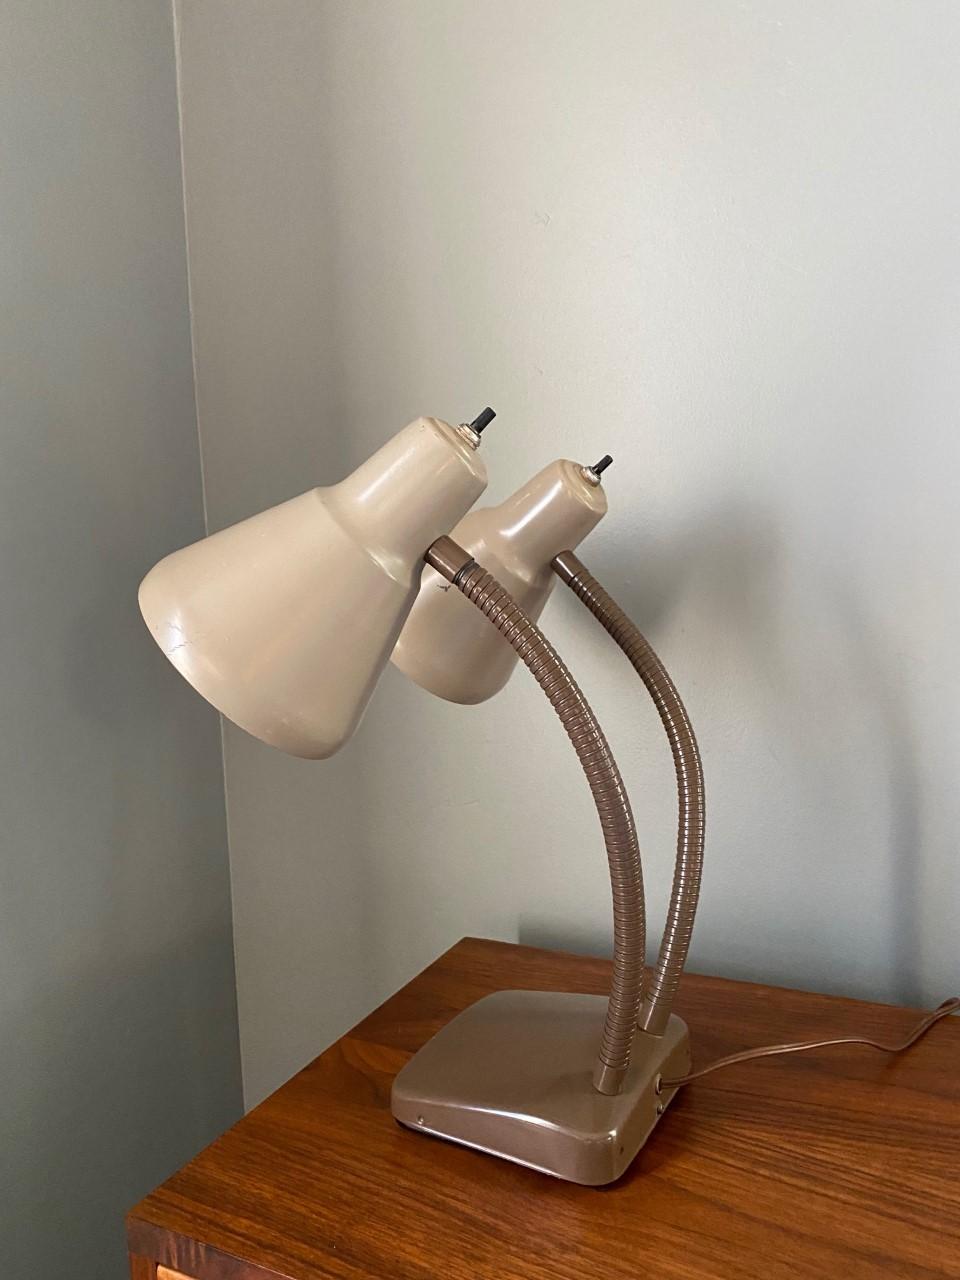 mid century gooseneck lamp